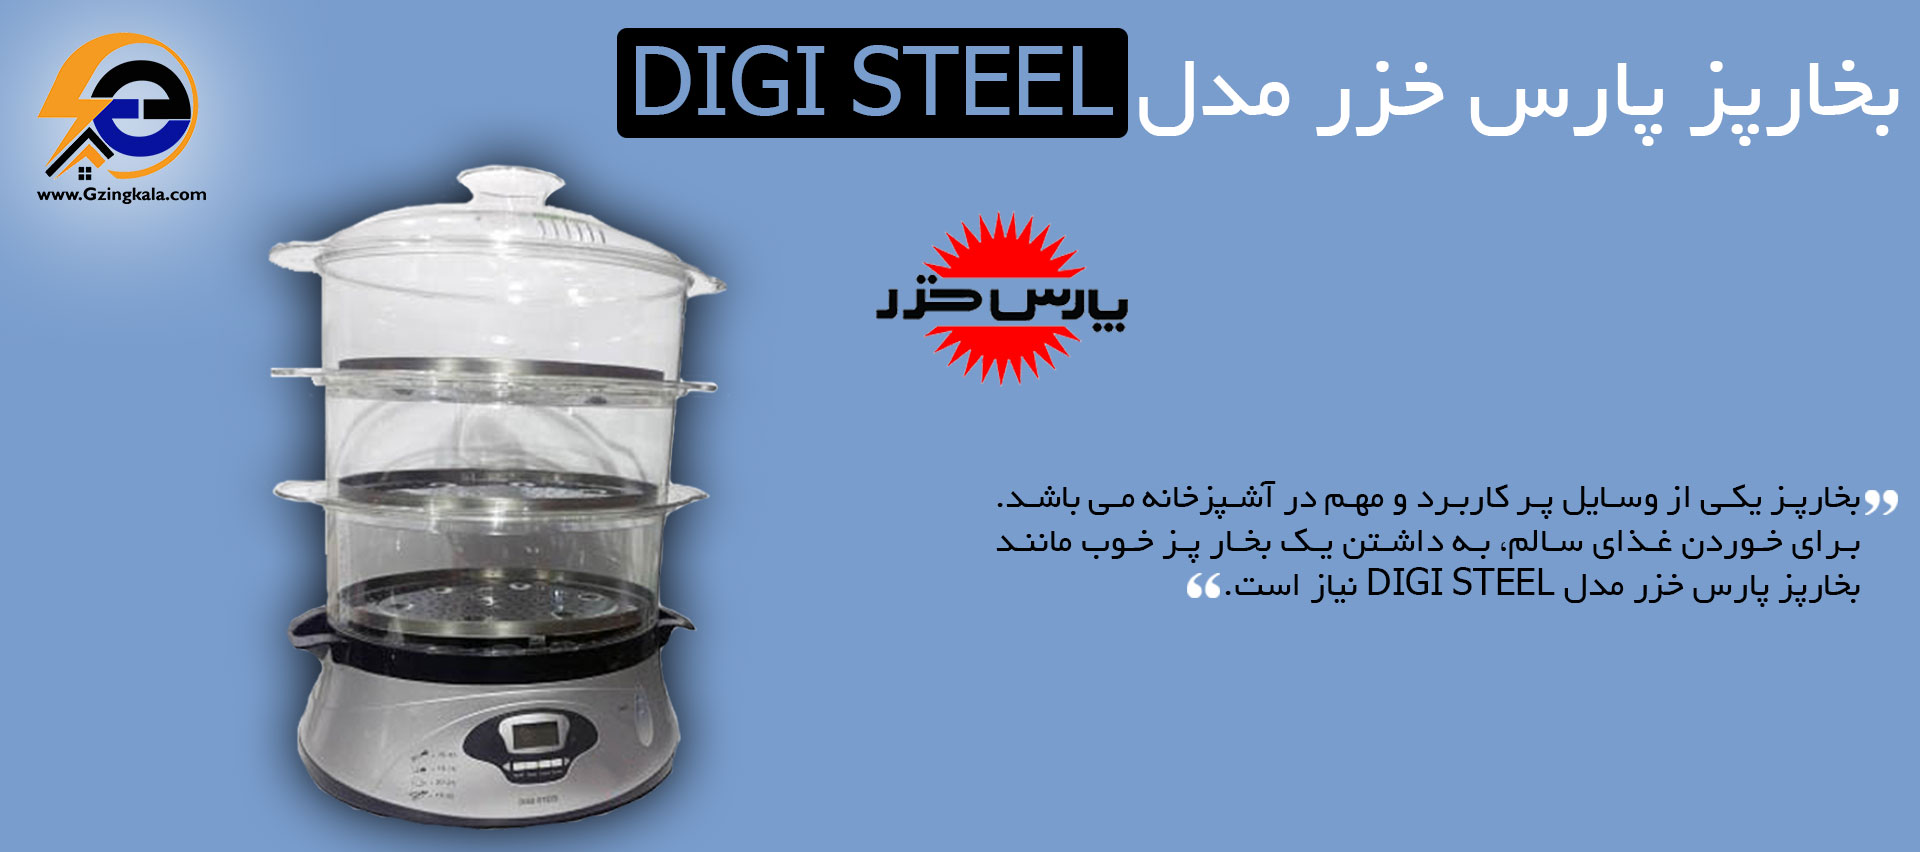 بخارپز پارس خزر مدل Digi Steel